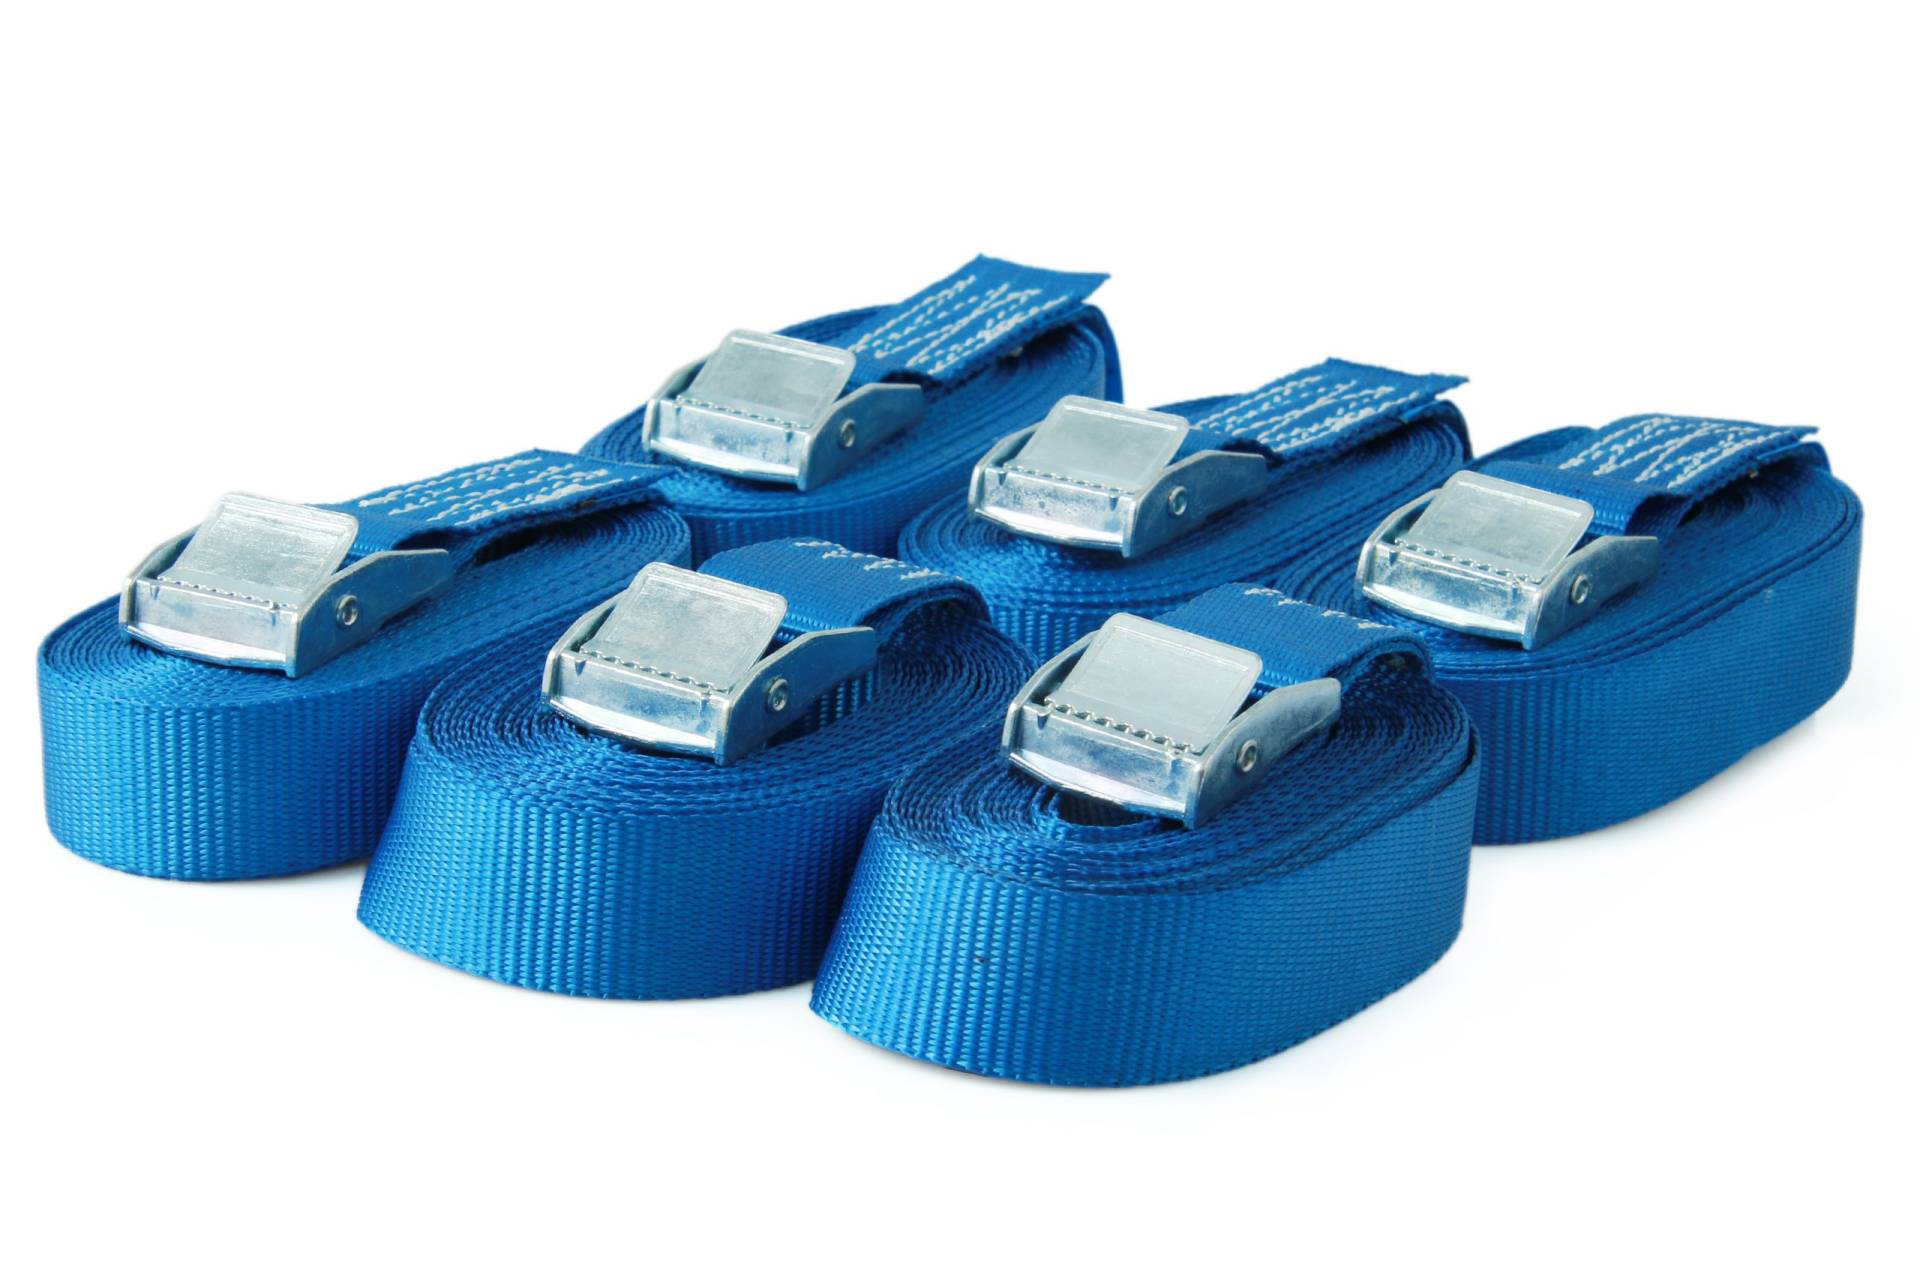 Sandax 6er-Set Spanngurte mit Klemmschloss, Länge 4m, Breite 25mm, Farbe blau, Zurrgurte mit Klemmverschluss, belastbar bis 250kg, nach DIN EN 12195-2, Einteilige hochwertige Klemmschlossgurte von Sandax